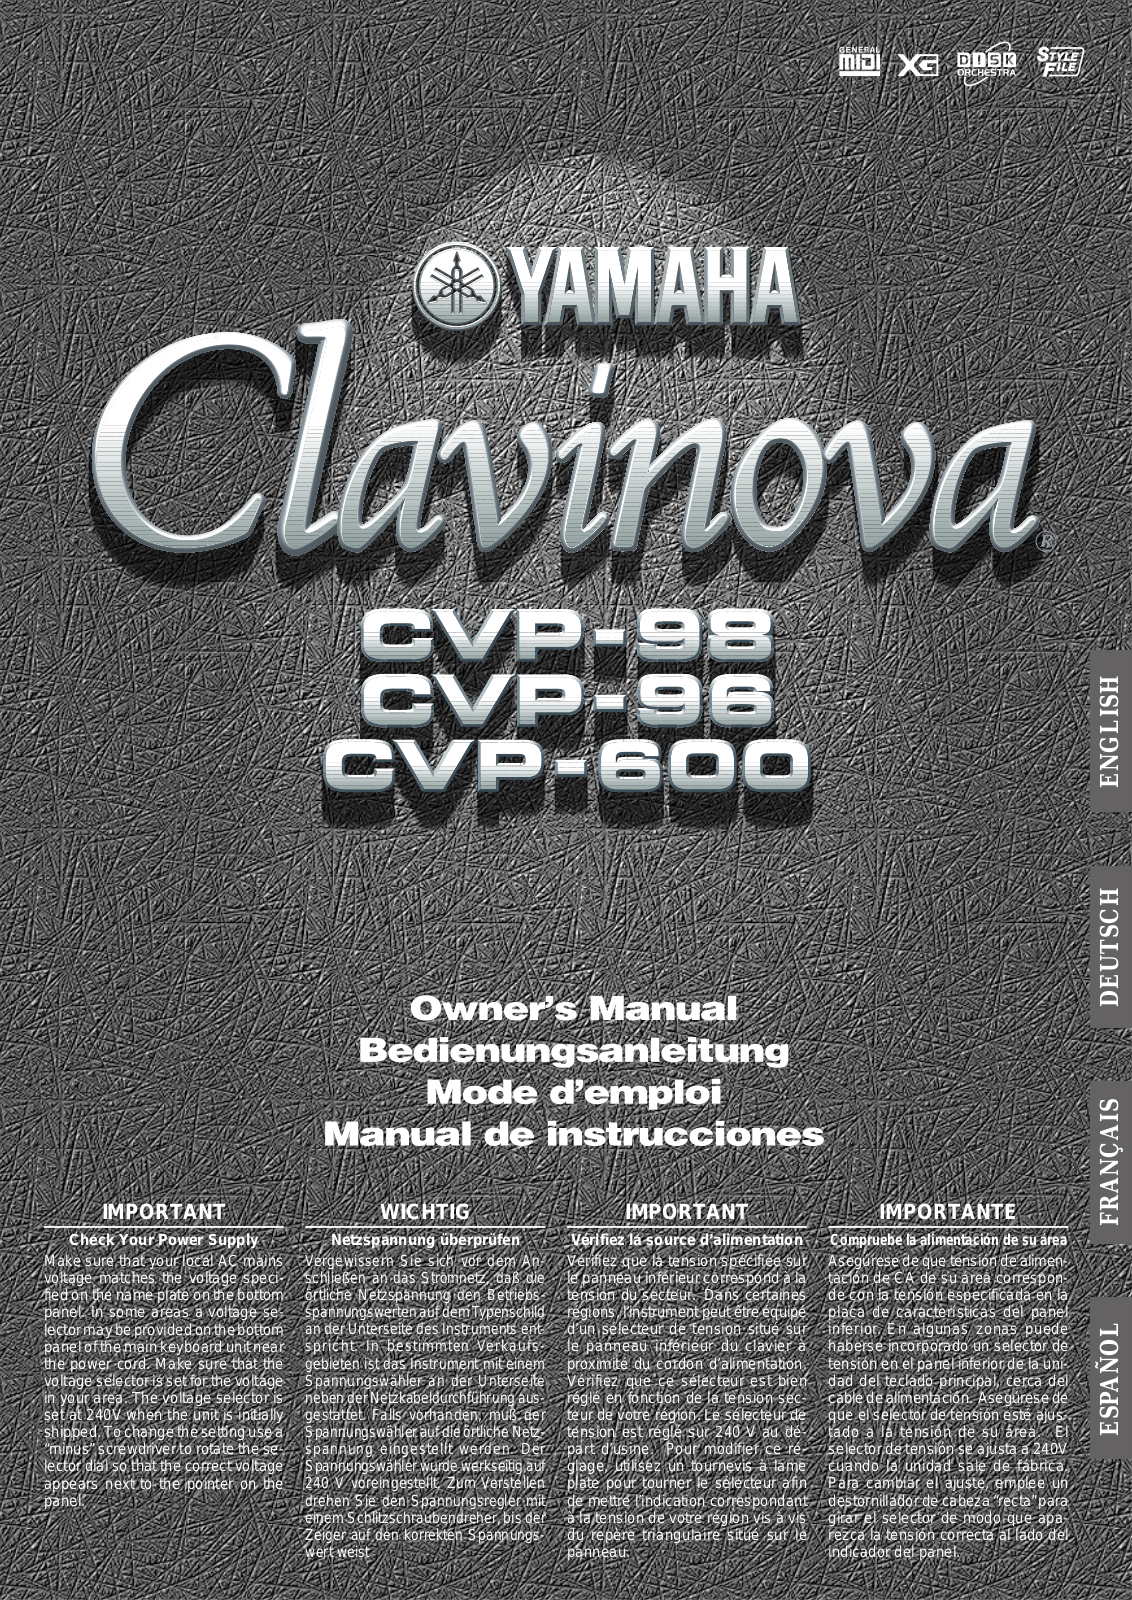 Yamaha CVP-98, CVP-96, CVP-600 User Manual